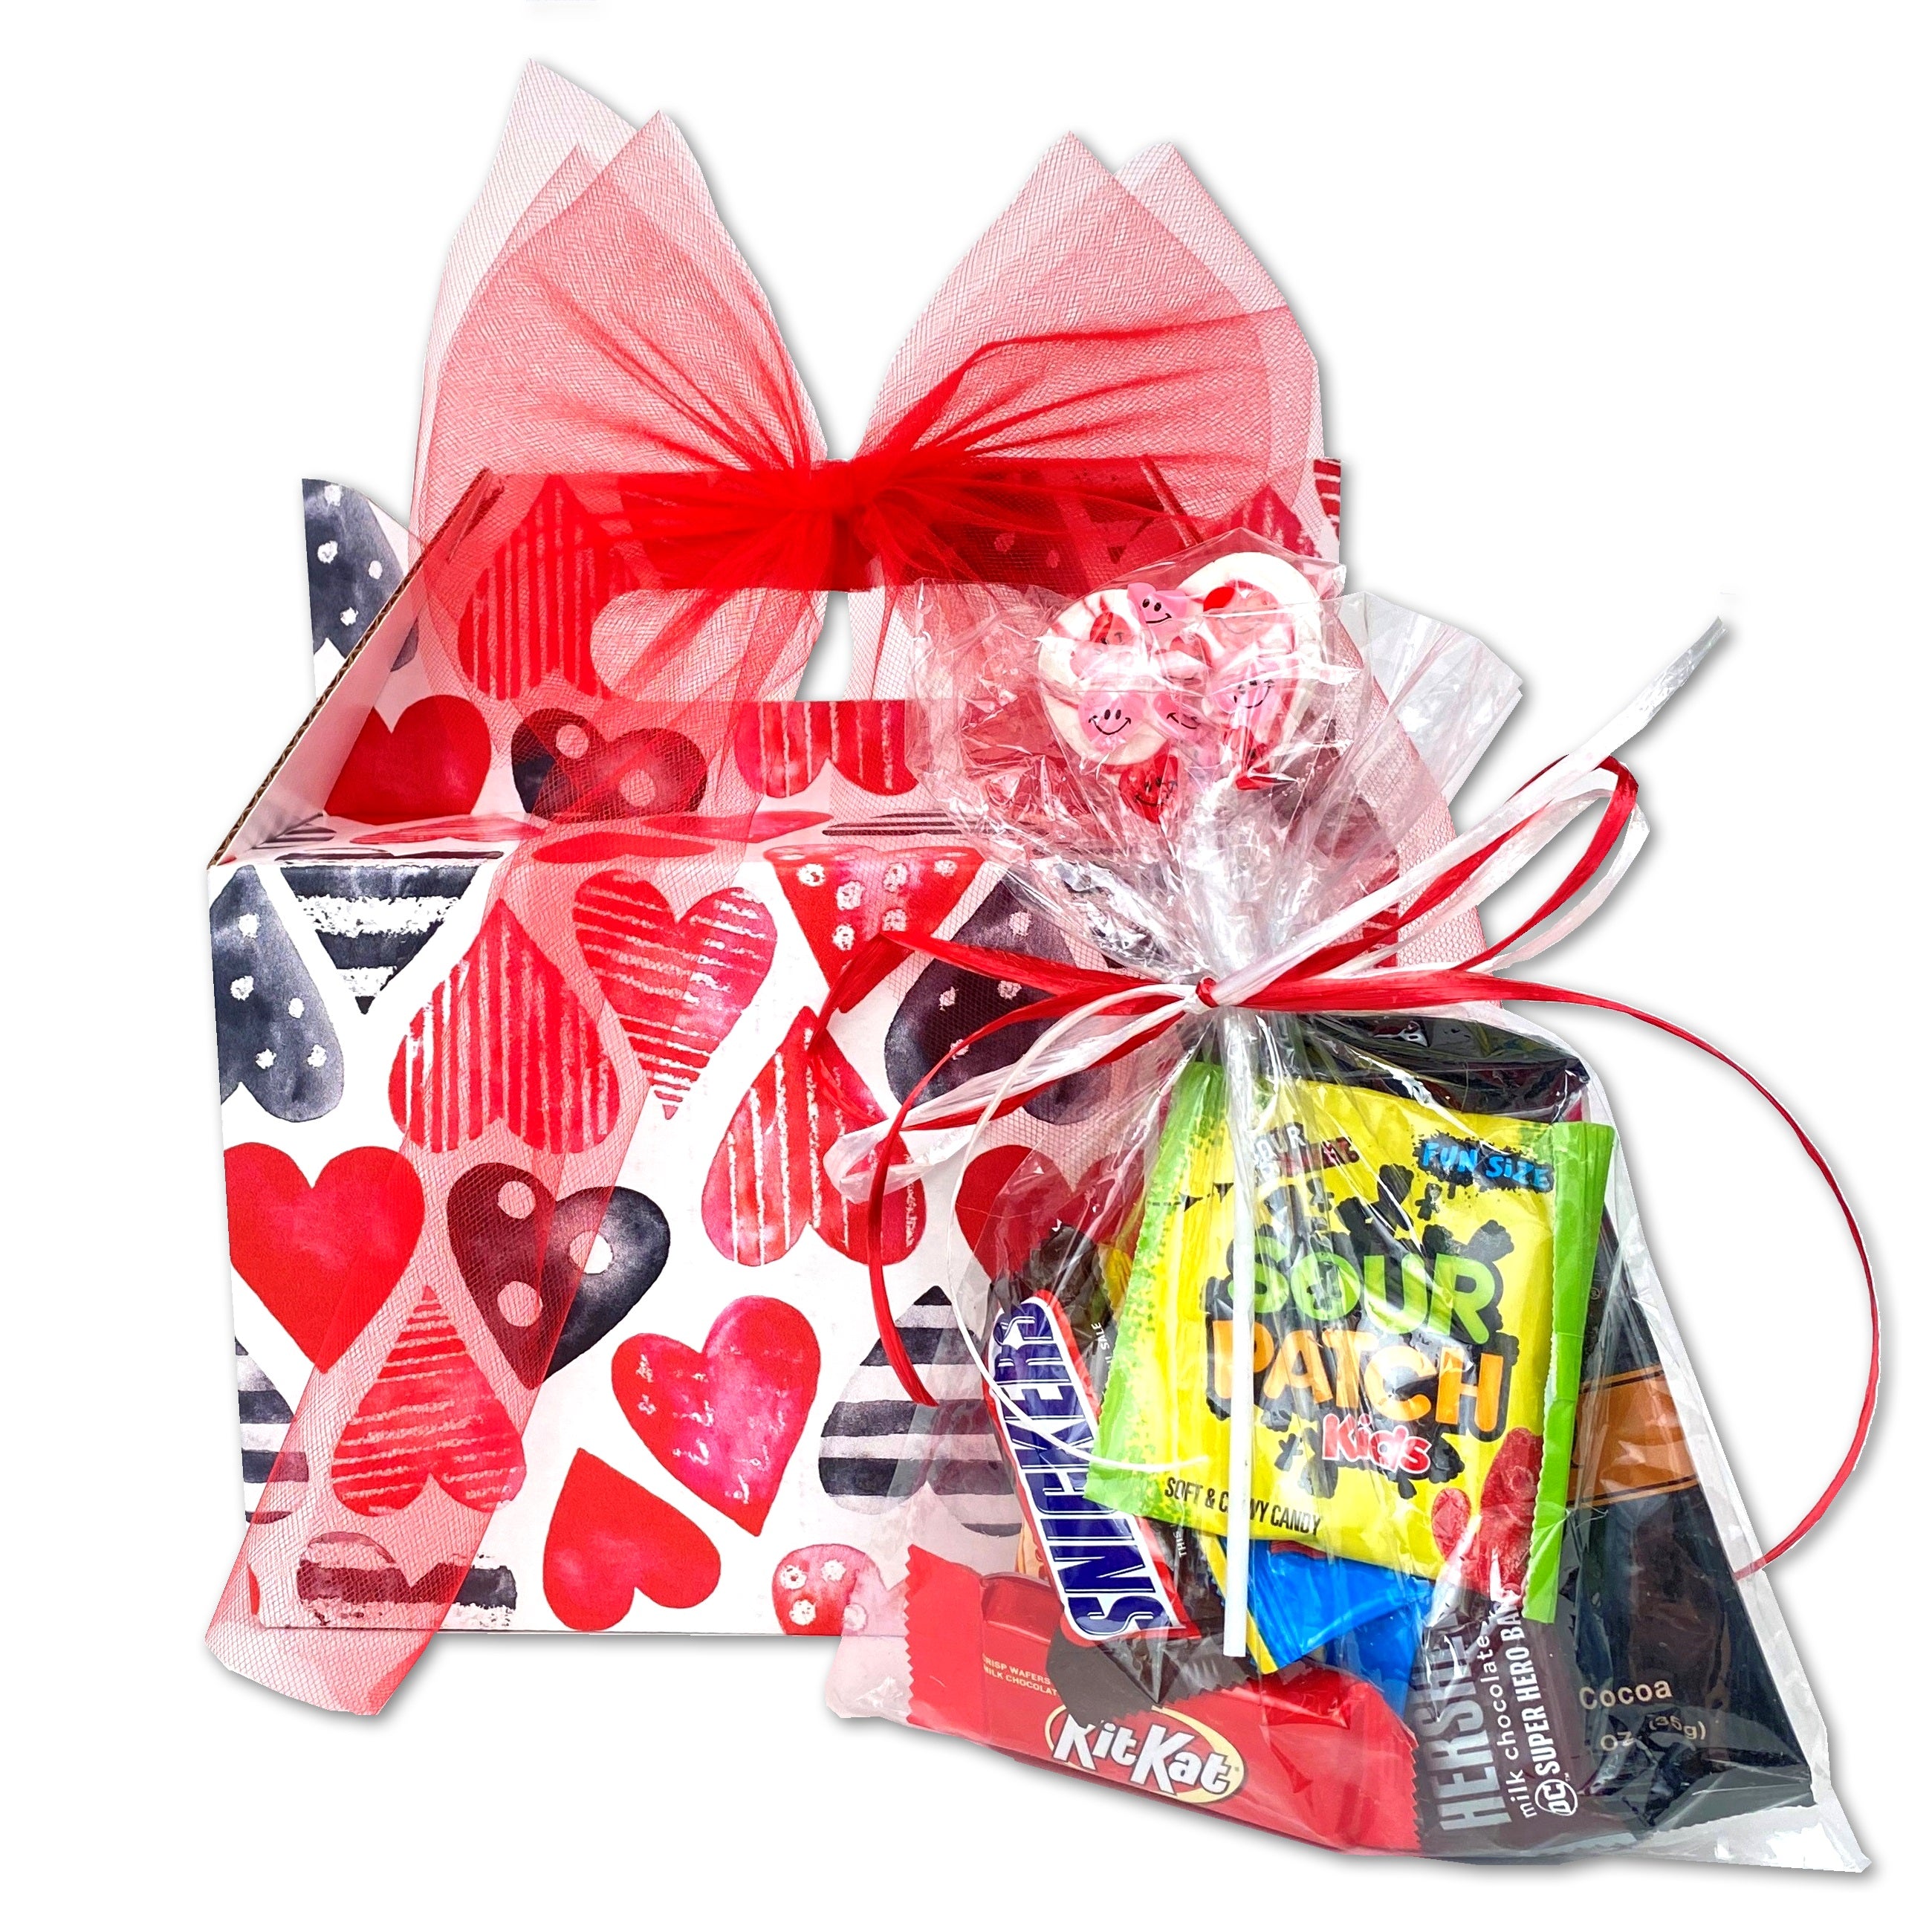 No Flak Teen Pack Valentine's Day Gift